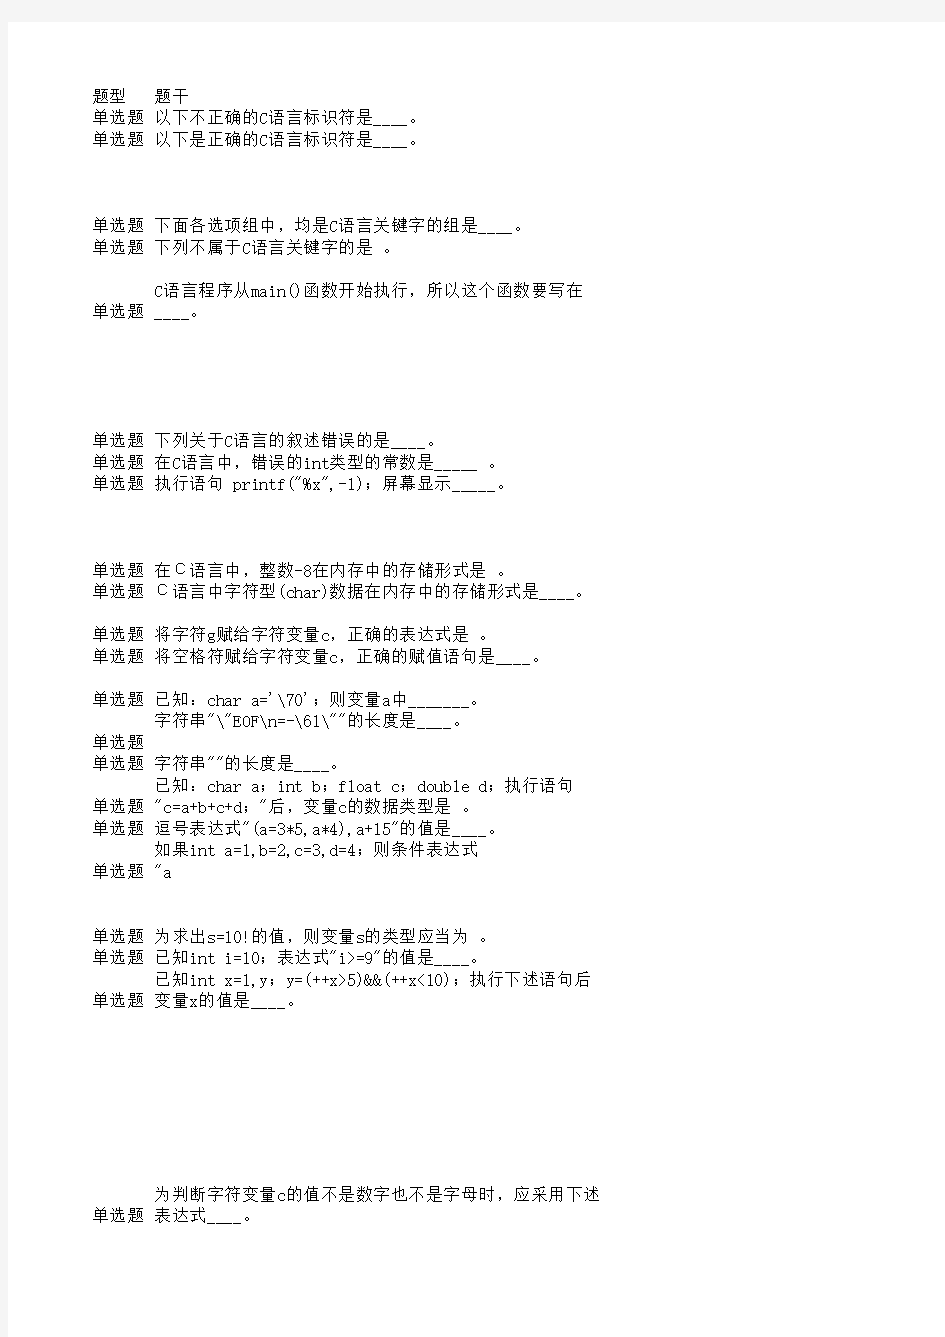 青岛科技大学C语言程序设计复习材料(全面版)